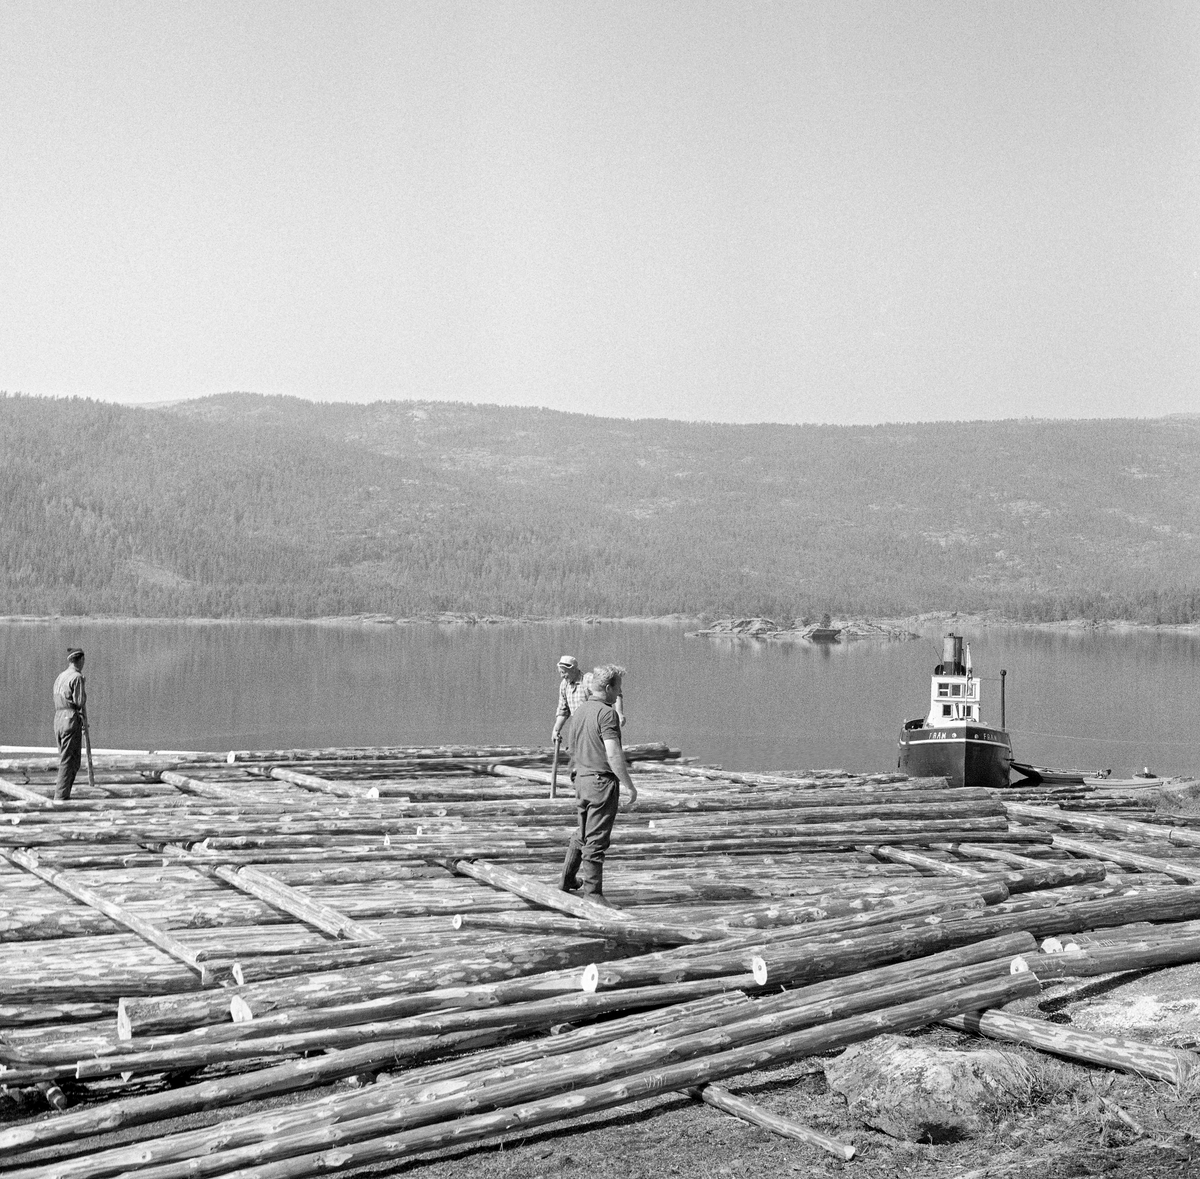 Tømmervelte ved innsjøen Nisser i Kviteseid i Telemark, fotografert våren 1970.  Nisser er den niende største innsjøen i Norge, og den største i Telemark.  Da bildet er tatt ser det ut til at man hadde begynt med utislag av tømmer, som var lagt flovis på strøstokker, slik at virket lett kunne rulles ut i innsjøen når tida var inne for å starte fløtingssesongen.  I strandsonen ser vi slepebåten M/S Fram, som ble bygd i 1909 for buksering av tømmer på Nisser og Vråvatn.  De lengste slepene gikk fra Treungen til Vråliosen, en strekning på cirka 65 kilometer.  M/S Fram fungerte som slepebåt for Nidarå Fellesfløtningsforening inntil fløtinga opphørte etter 1970-sesongen.  Deretter ble fartøyet liggende å forfalle, inntil det i 1986 fikk nye eiere, som restaurerte M/S Fram med sikte på en ny bruk som passasjerbåt med kapasitet til å ta med inntil 90 passasjerer på sightseeing på innsjøene der båten en gang bukserte tømmer.